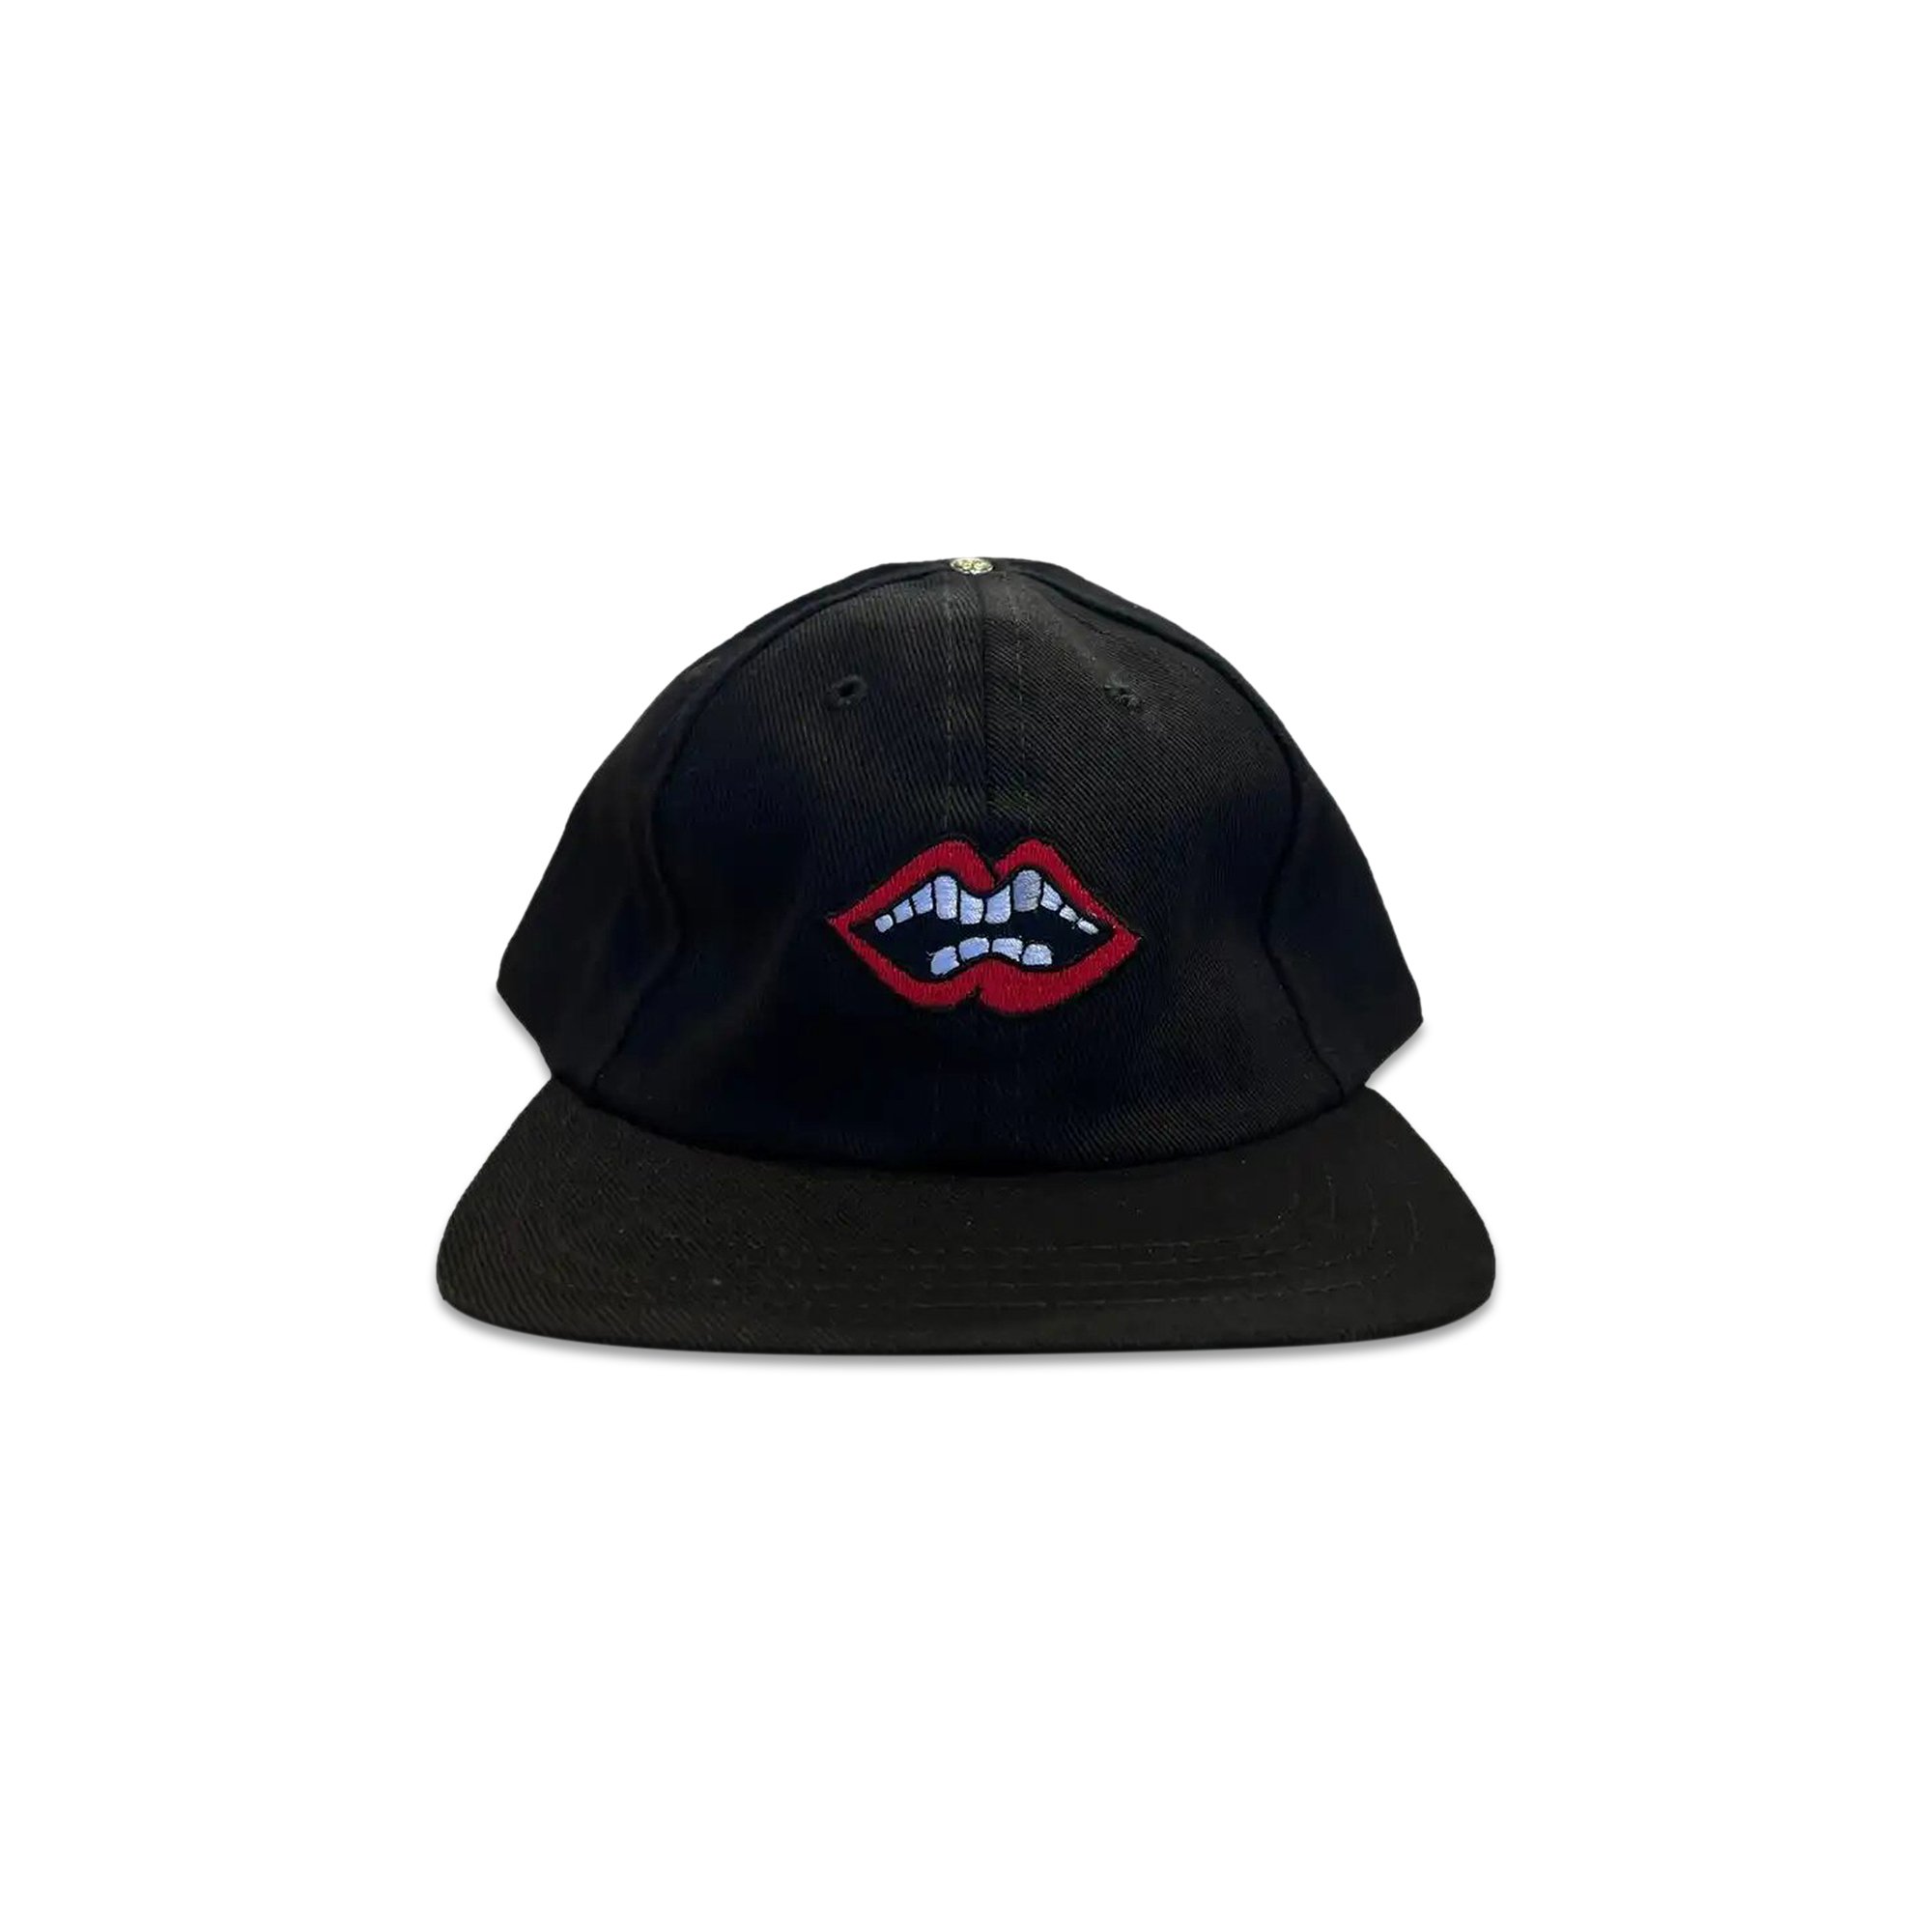 Кожаная шляпа Chomper Chrome Hearts x Matty Boy, цвет Черный/Многоцветный цена и фото